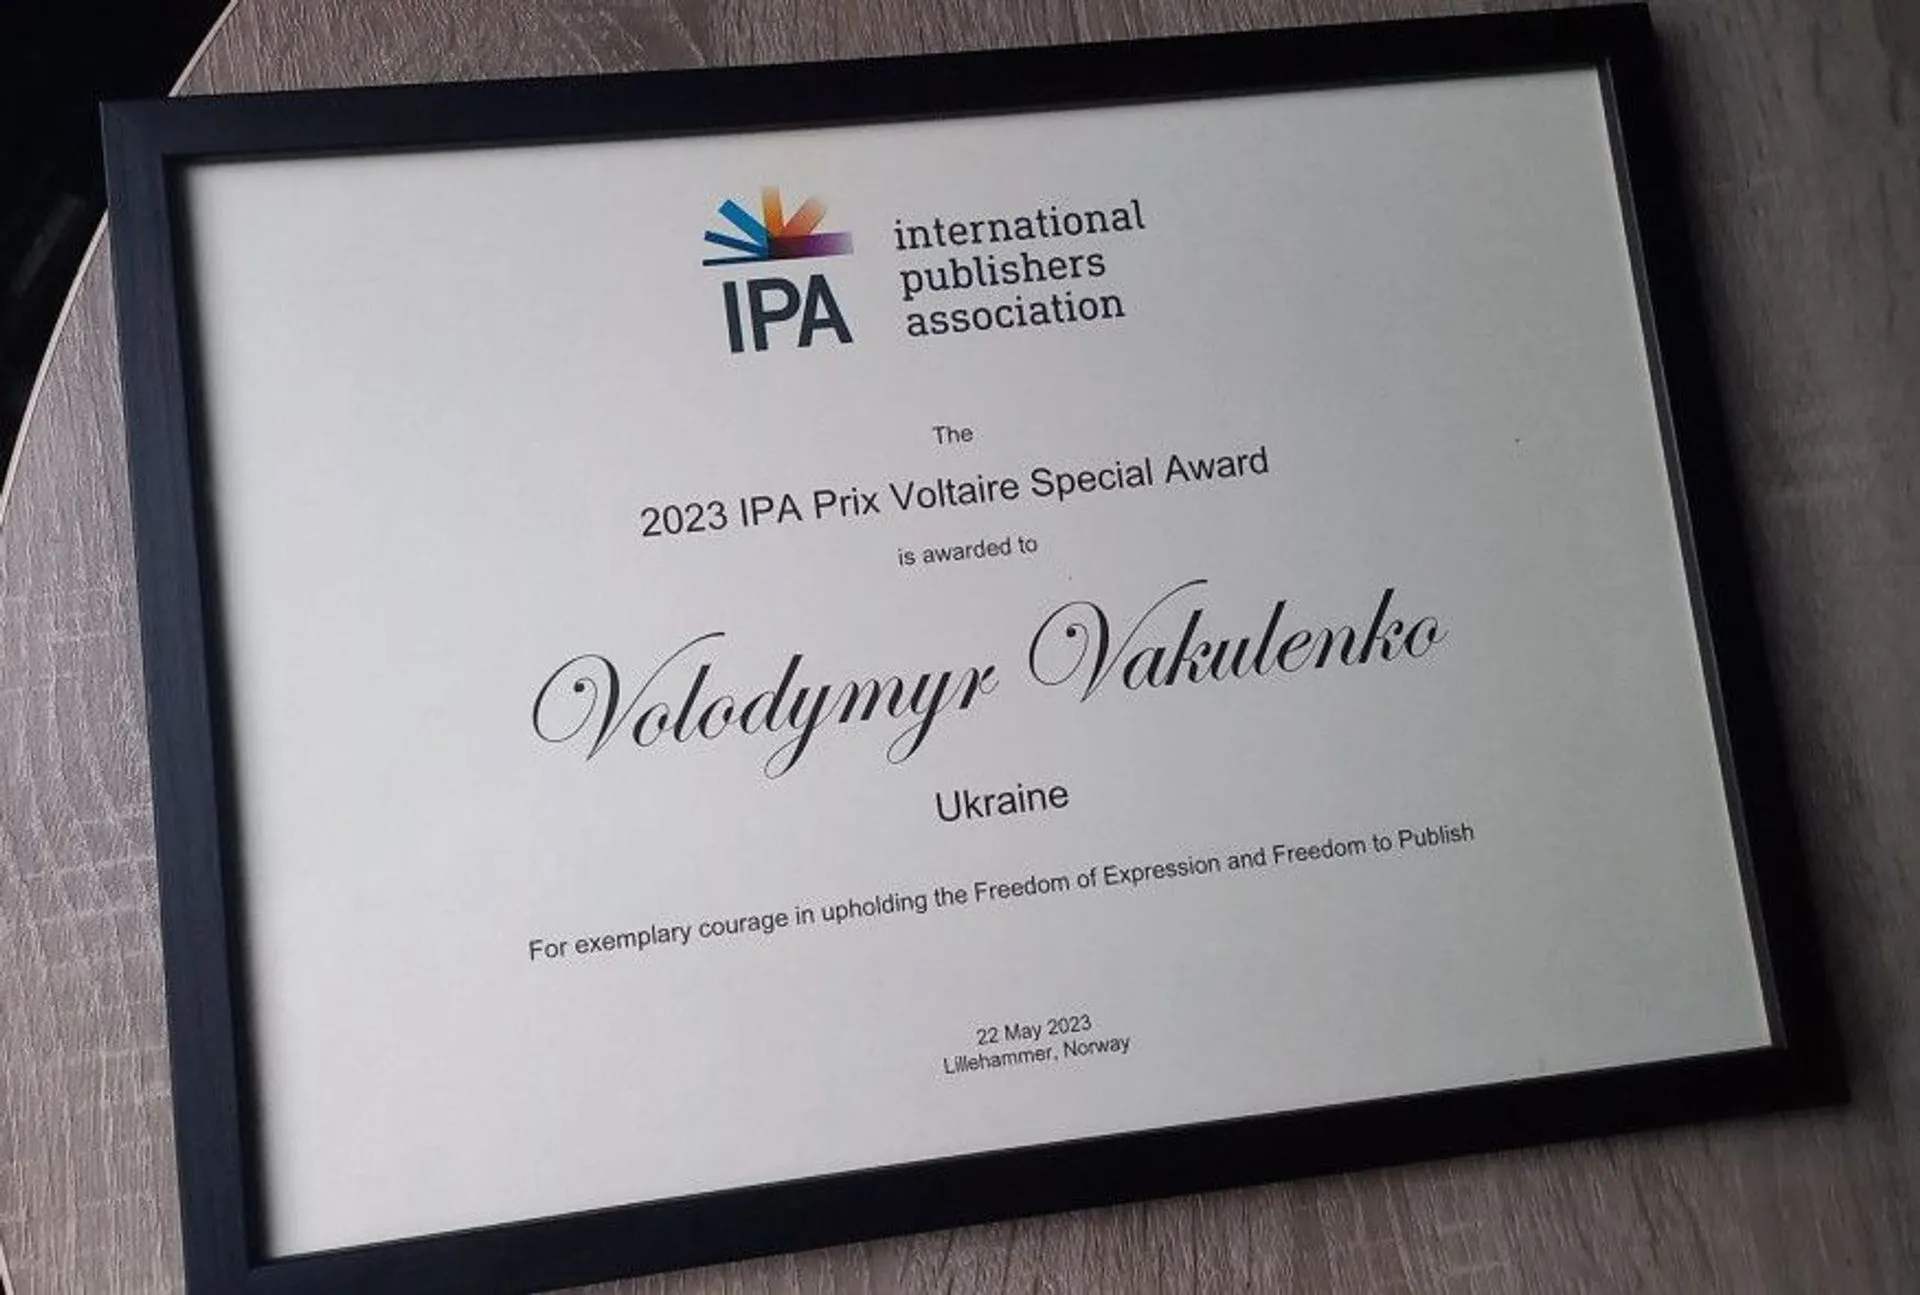 Володимира Вакуленка нагородили відзнакою IPA Prix Voltaire Award 2023 посмертно